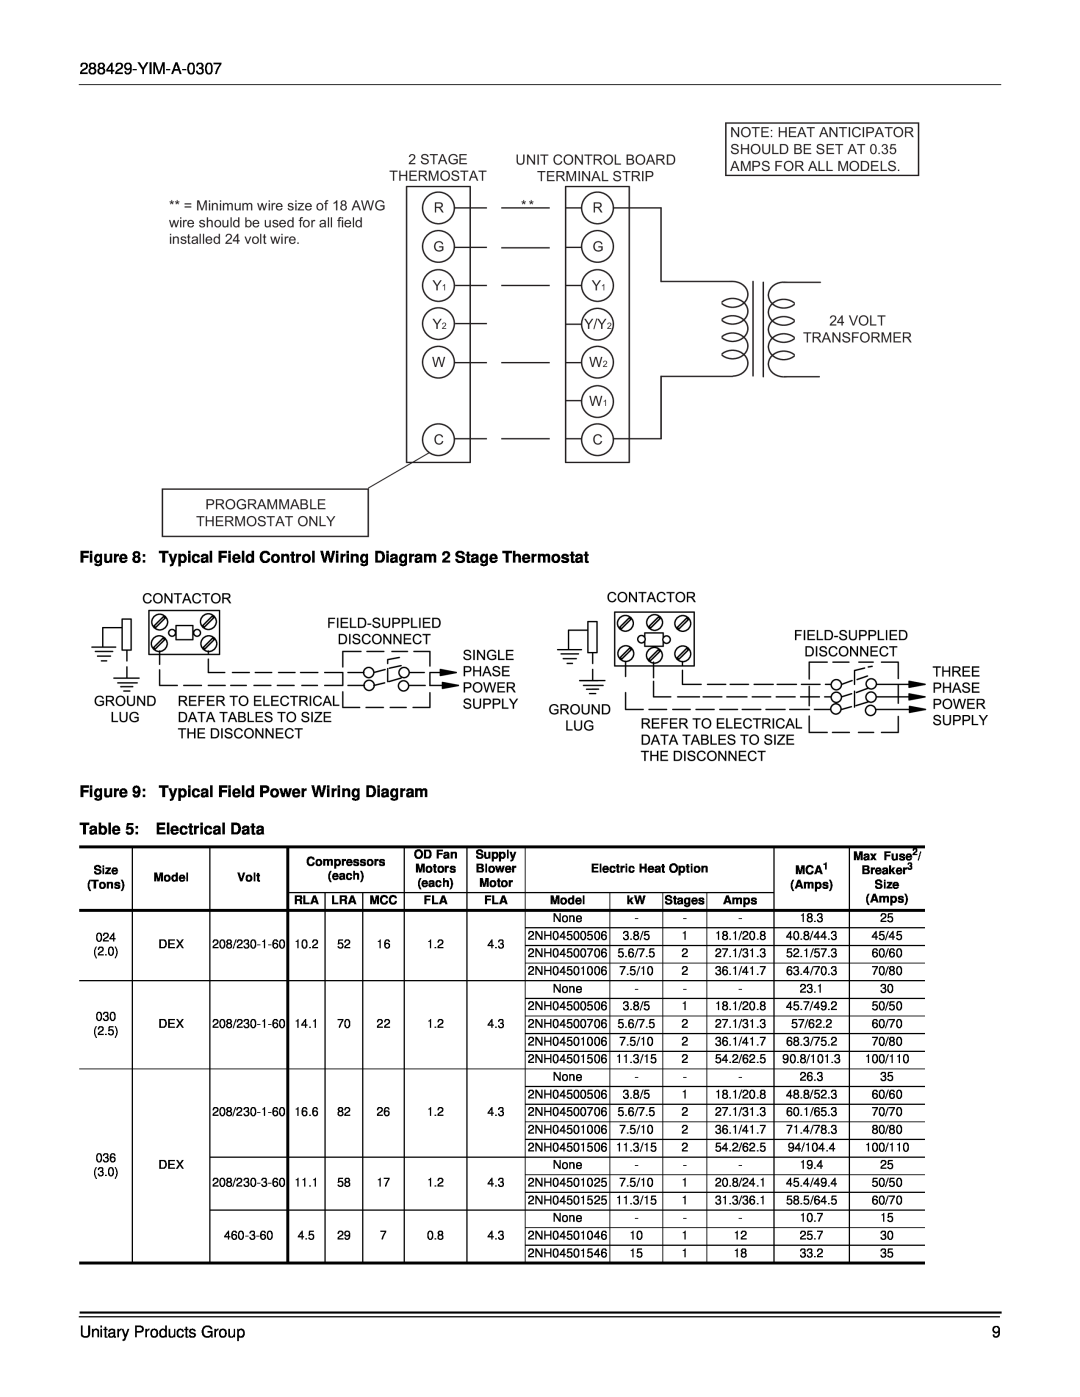 York R-410A Typical Field Power Wiring Diagram, Electrical Data, 2STAGE THERMOSTAT R G, Y2Y/Y2 WW2 W1 CC, Transformer 